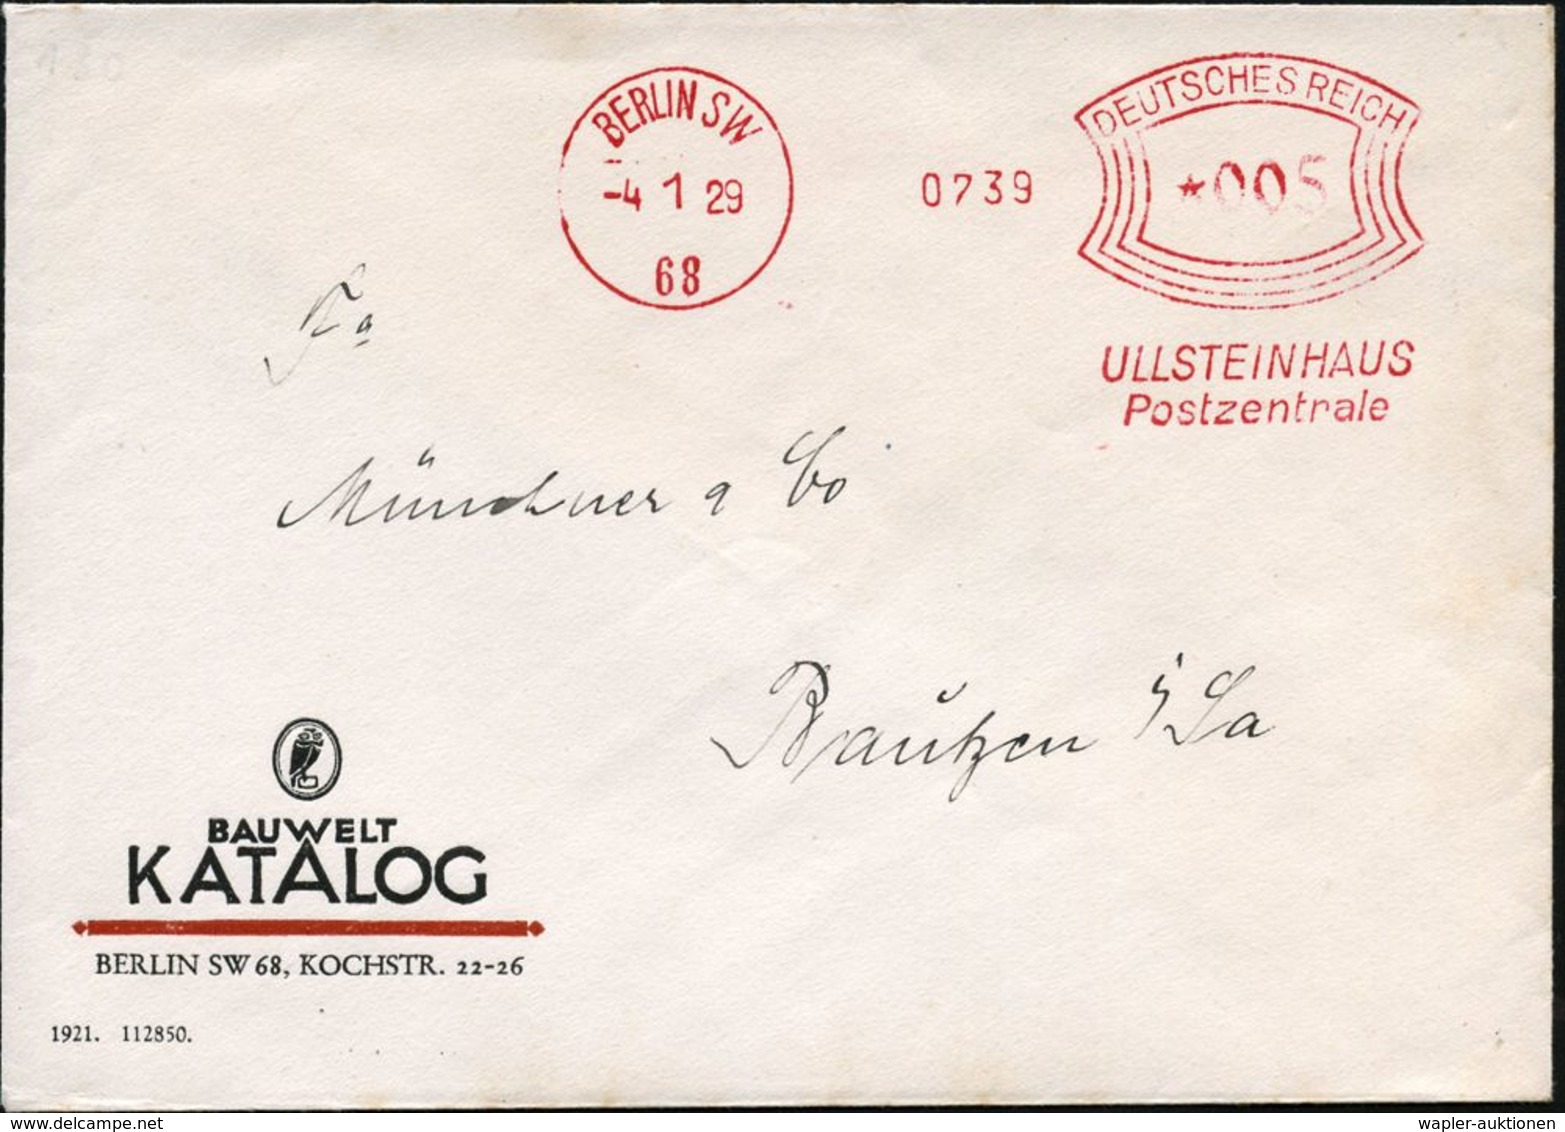 BERLIN SW/ 68/ ULLSTEINHAUS/ Postzentrale 1929 (4.1.) AFS = Jüdisches Verlagshaus, Von Den Nazis "arisiert" (siehe Lose  - Judaika, Judentum